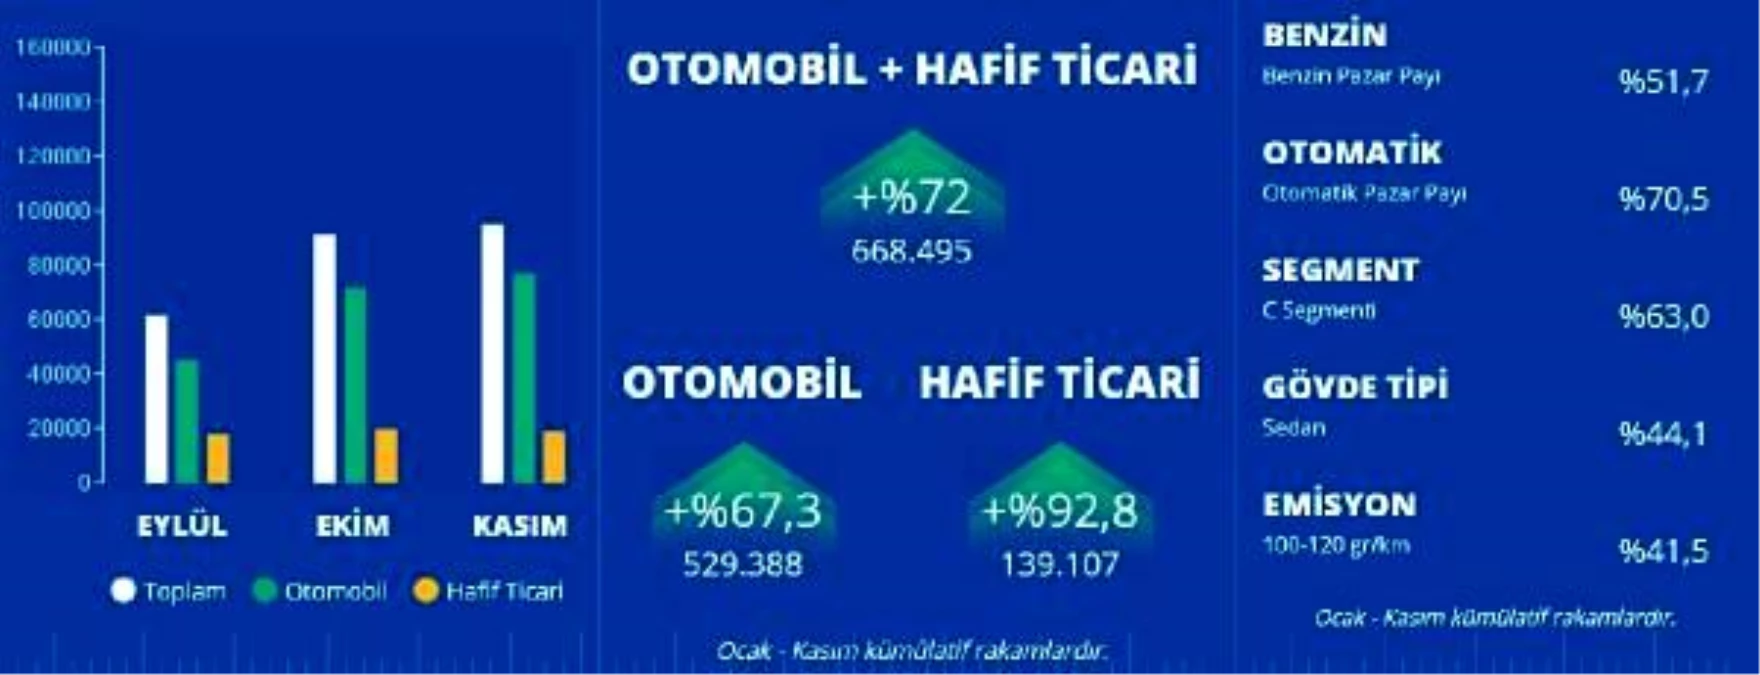 Türkiye otomotiv pazarı ocak-kasım döneminde yüzde 72 büyüdü